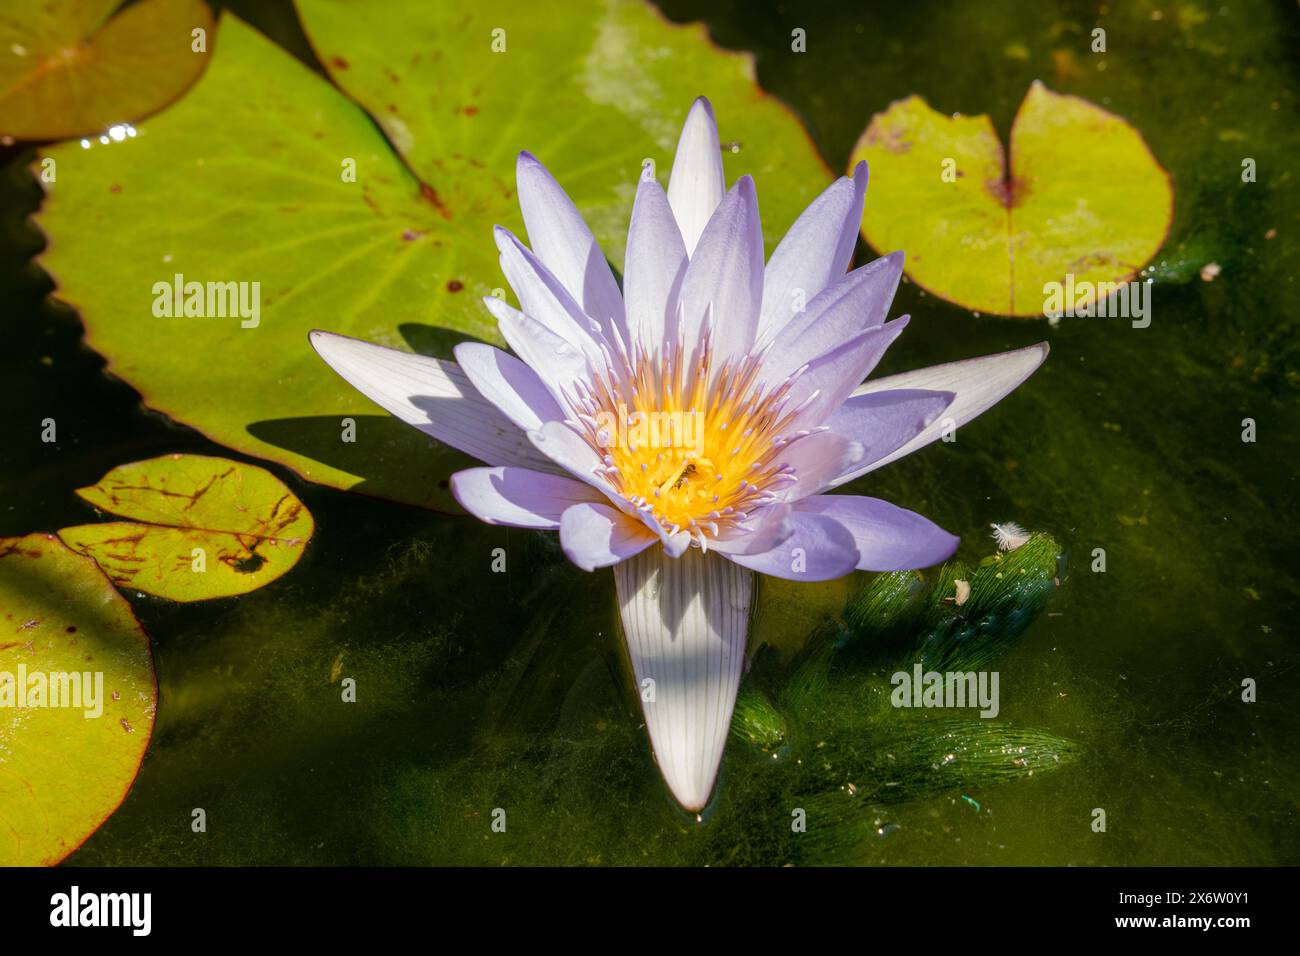 Belle fleur de lotus violette (eau de lis) avec des feuilles vertes dans l'étang fleurs de lotus bleues fleurissant dans l'eau magique, reflet de fleur dans l'eau. Banque D'Images